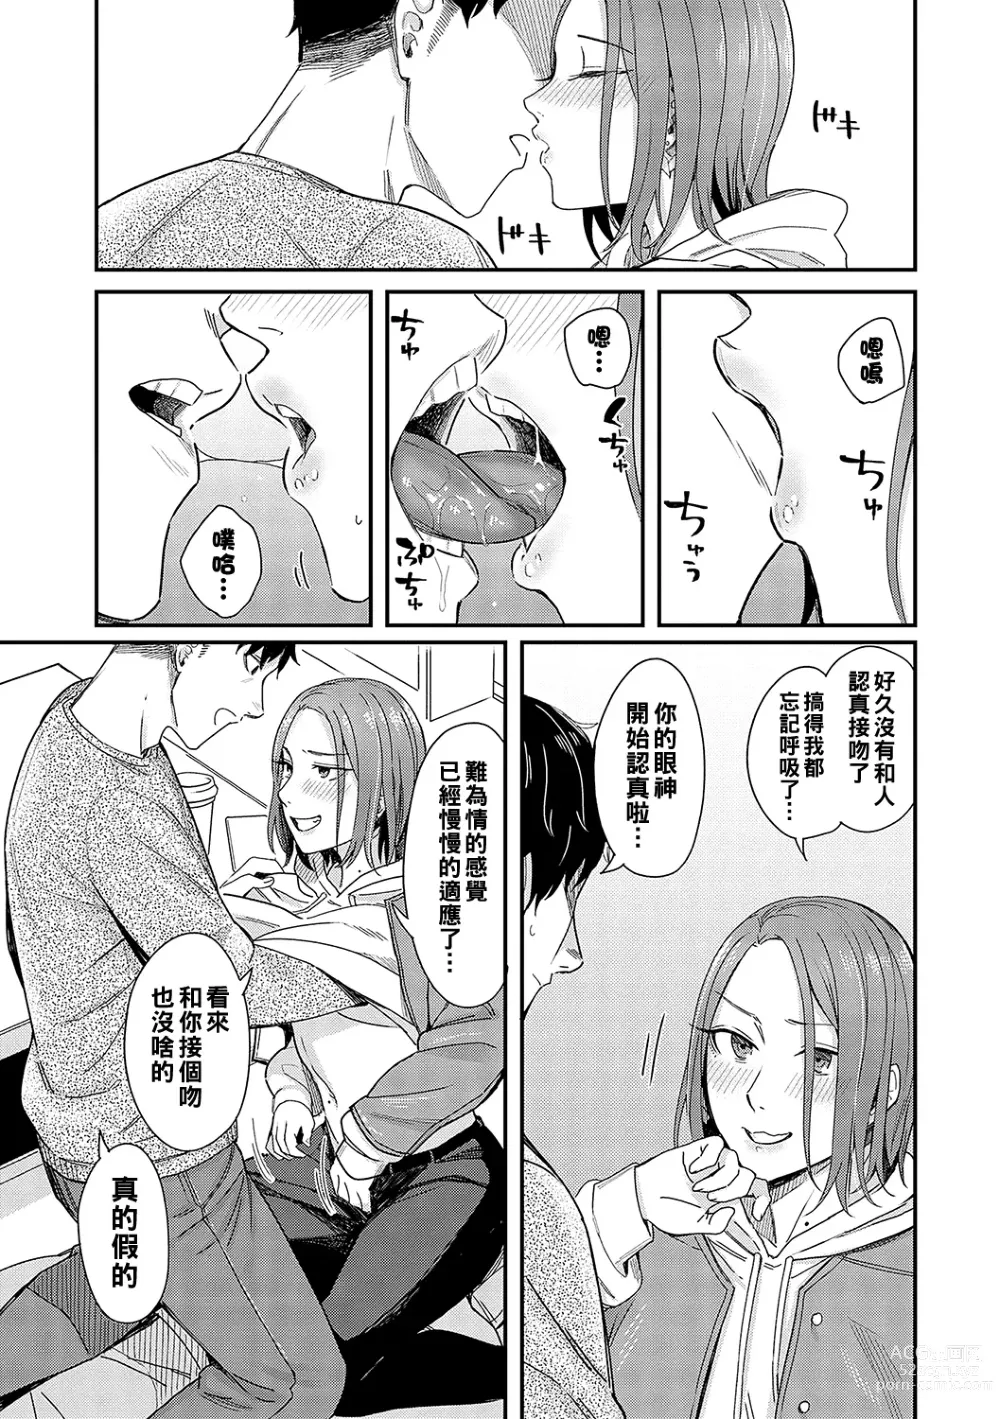 Page 13 of manga Kudaranai Renai Eiga no You ni... - Like a crappy romance movie...